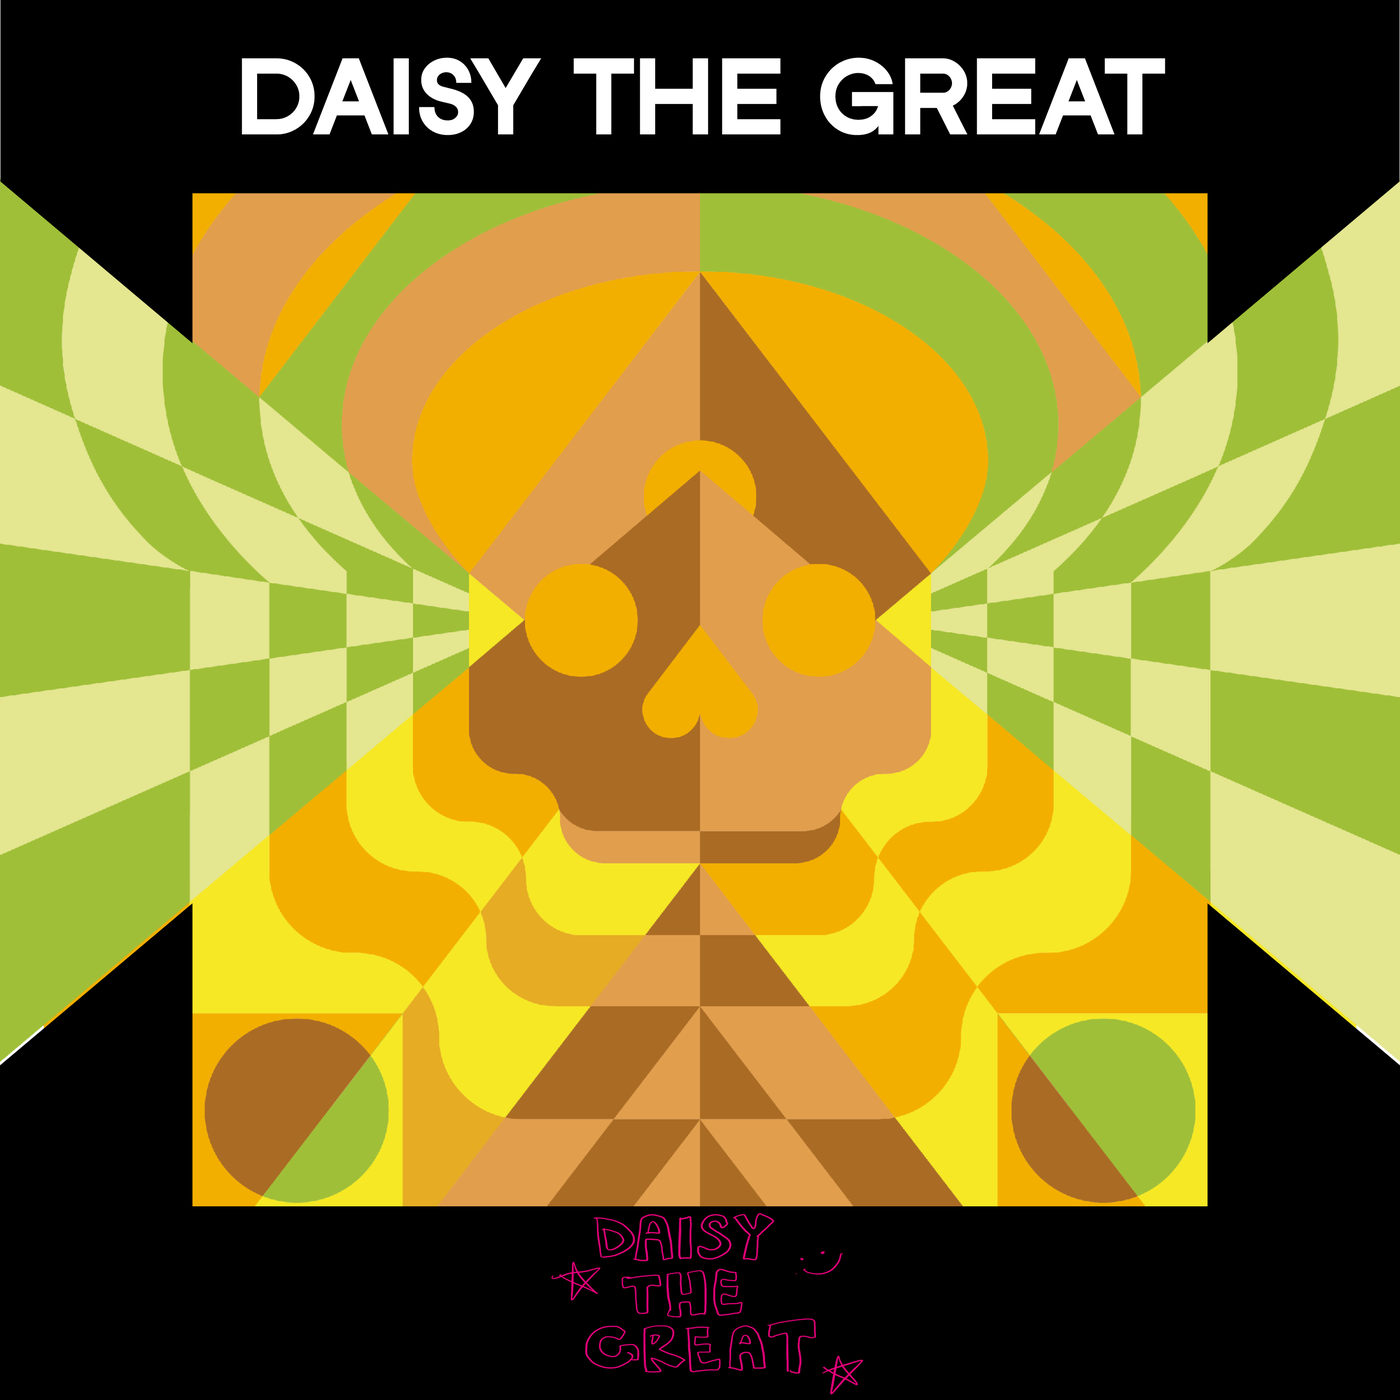 Daisy the Great über Indie Musik, zweistimmigen Gesang und Social Media